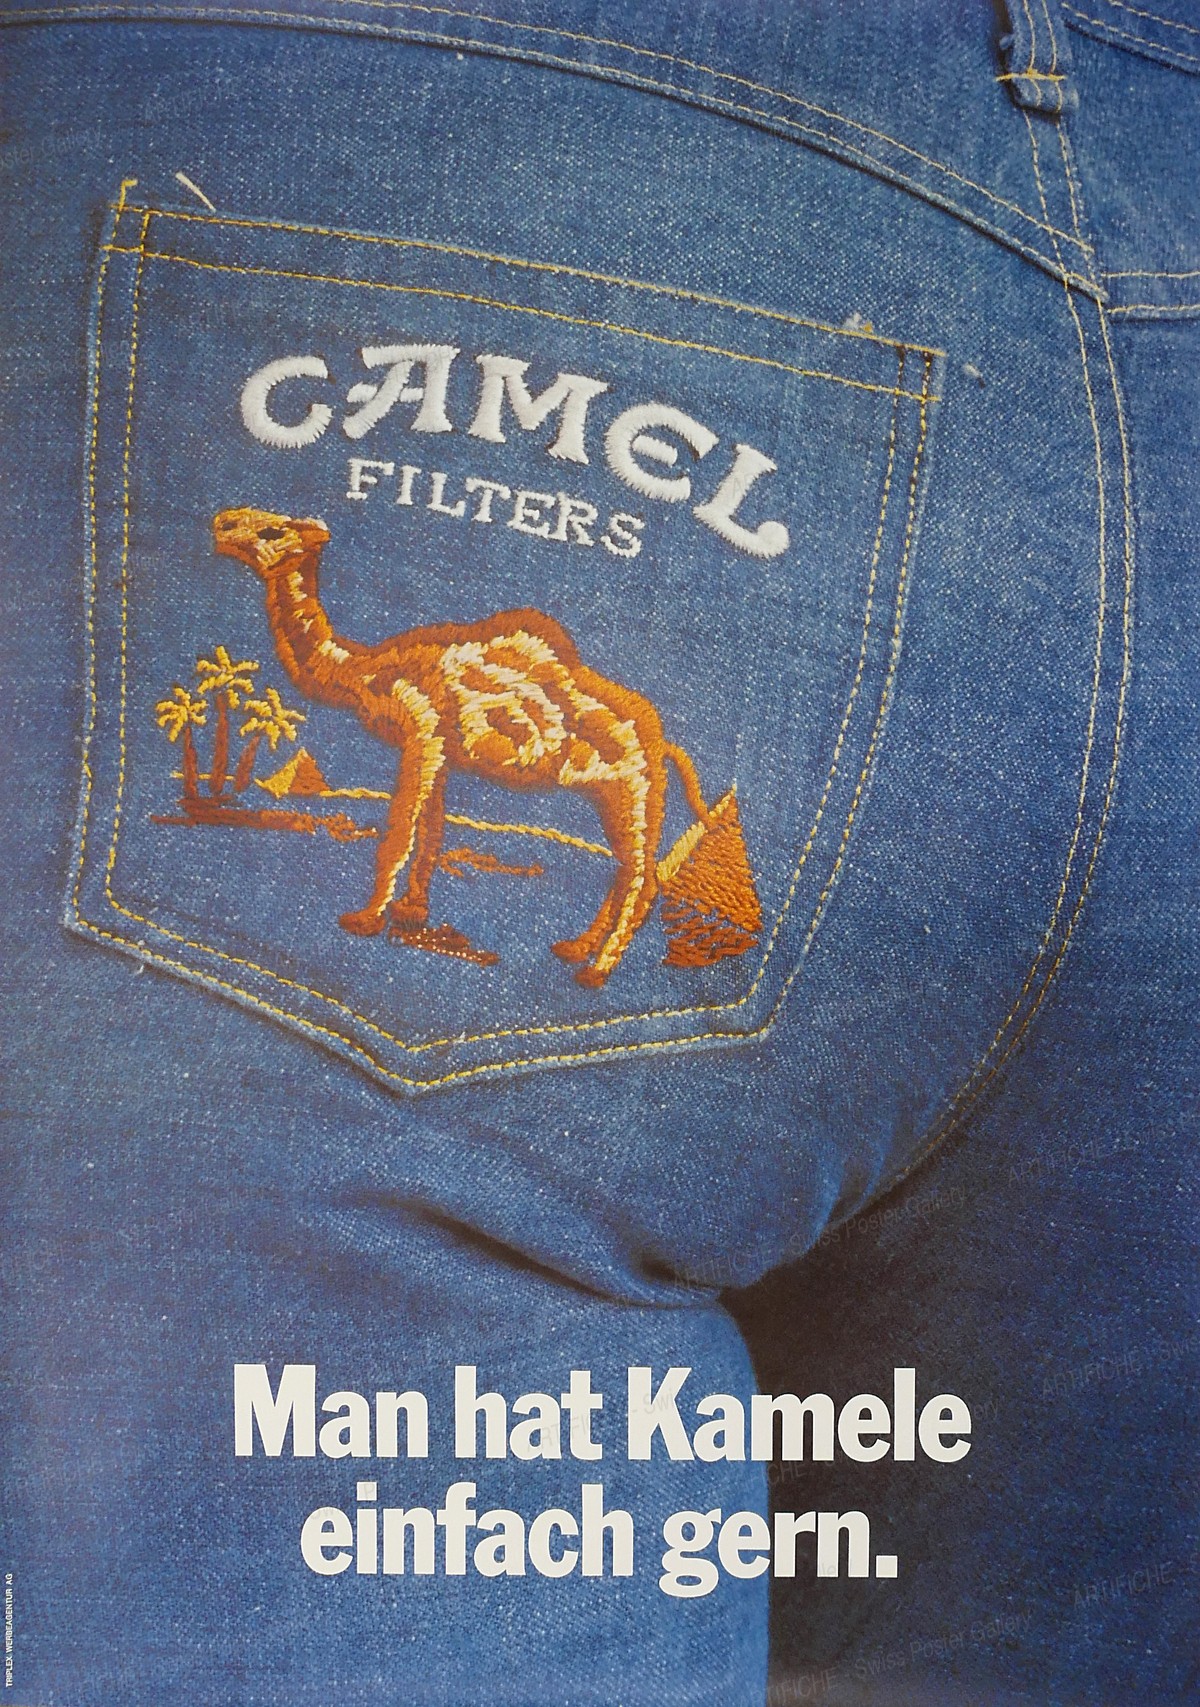 Camel Filters – tout le monde aime les chameaux, Triplex